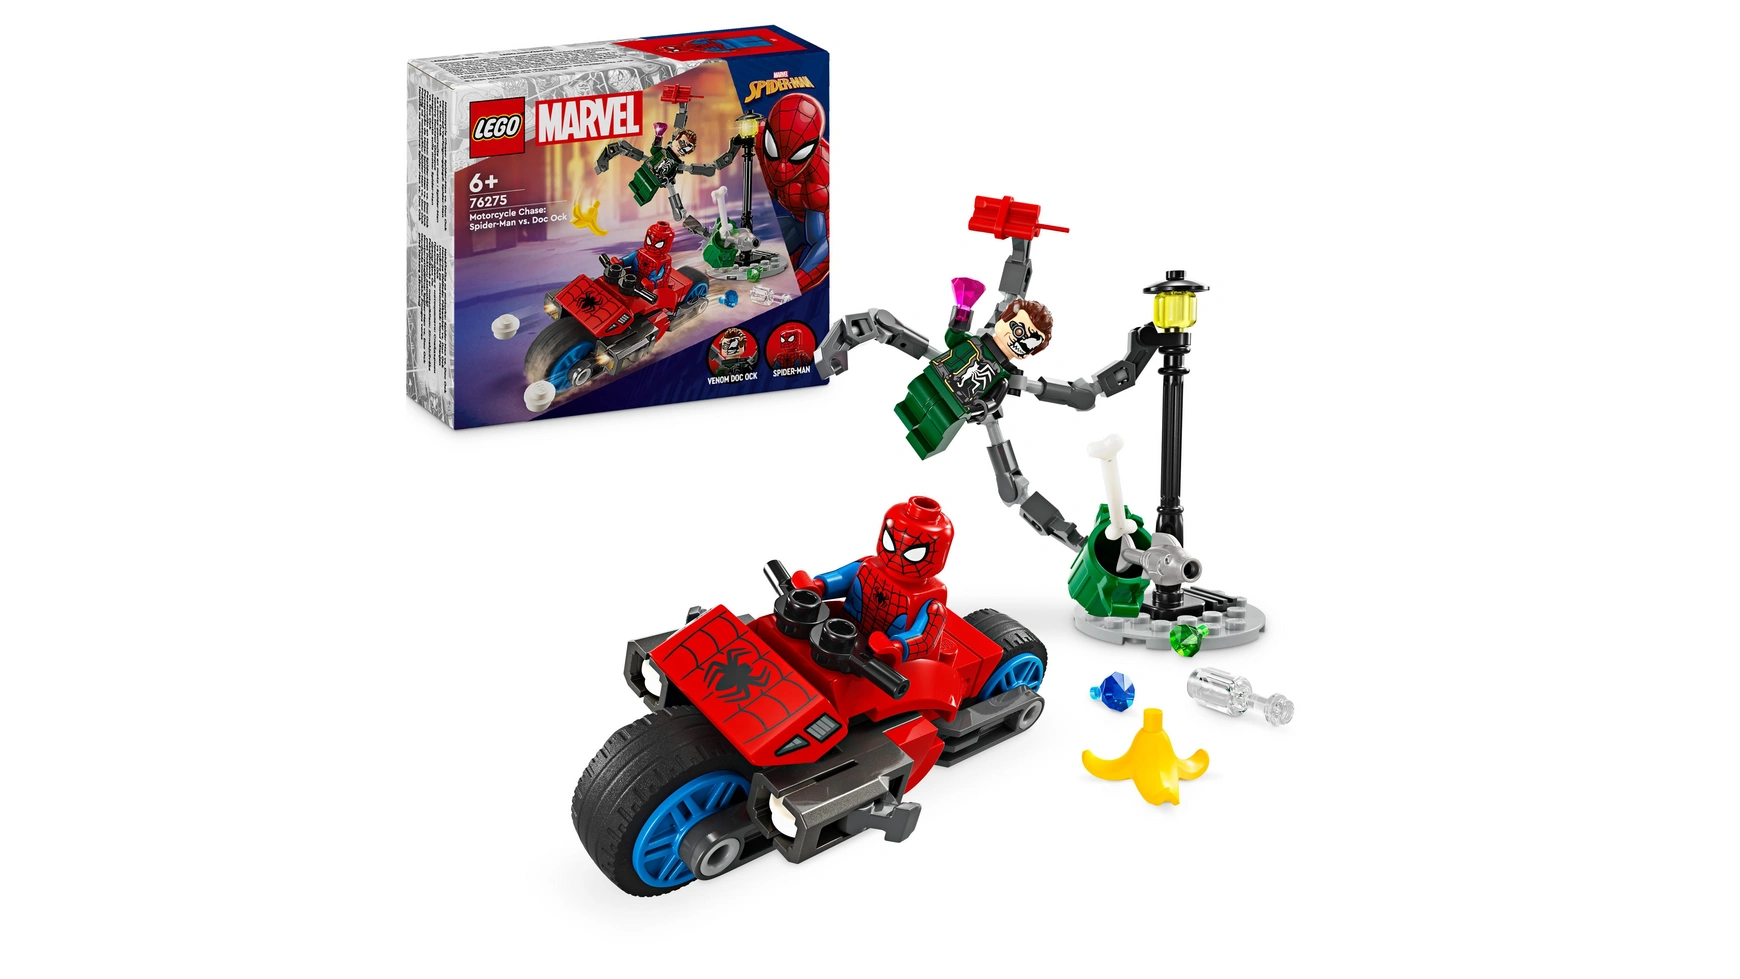 Lego Marvel Погоня на мотоцикле: Человек-паук против Дока Ока игр наб бенди чел паук против док окт